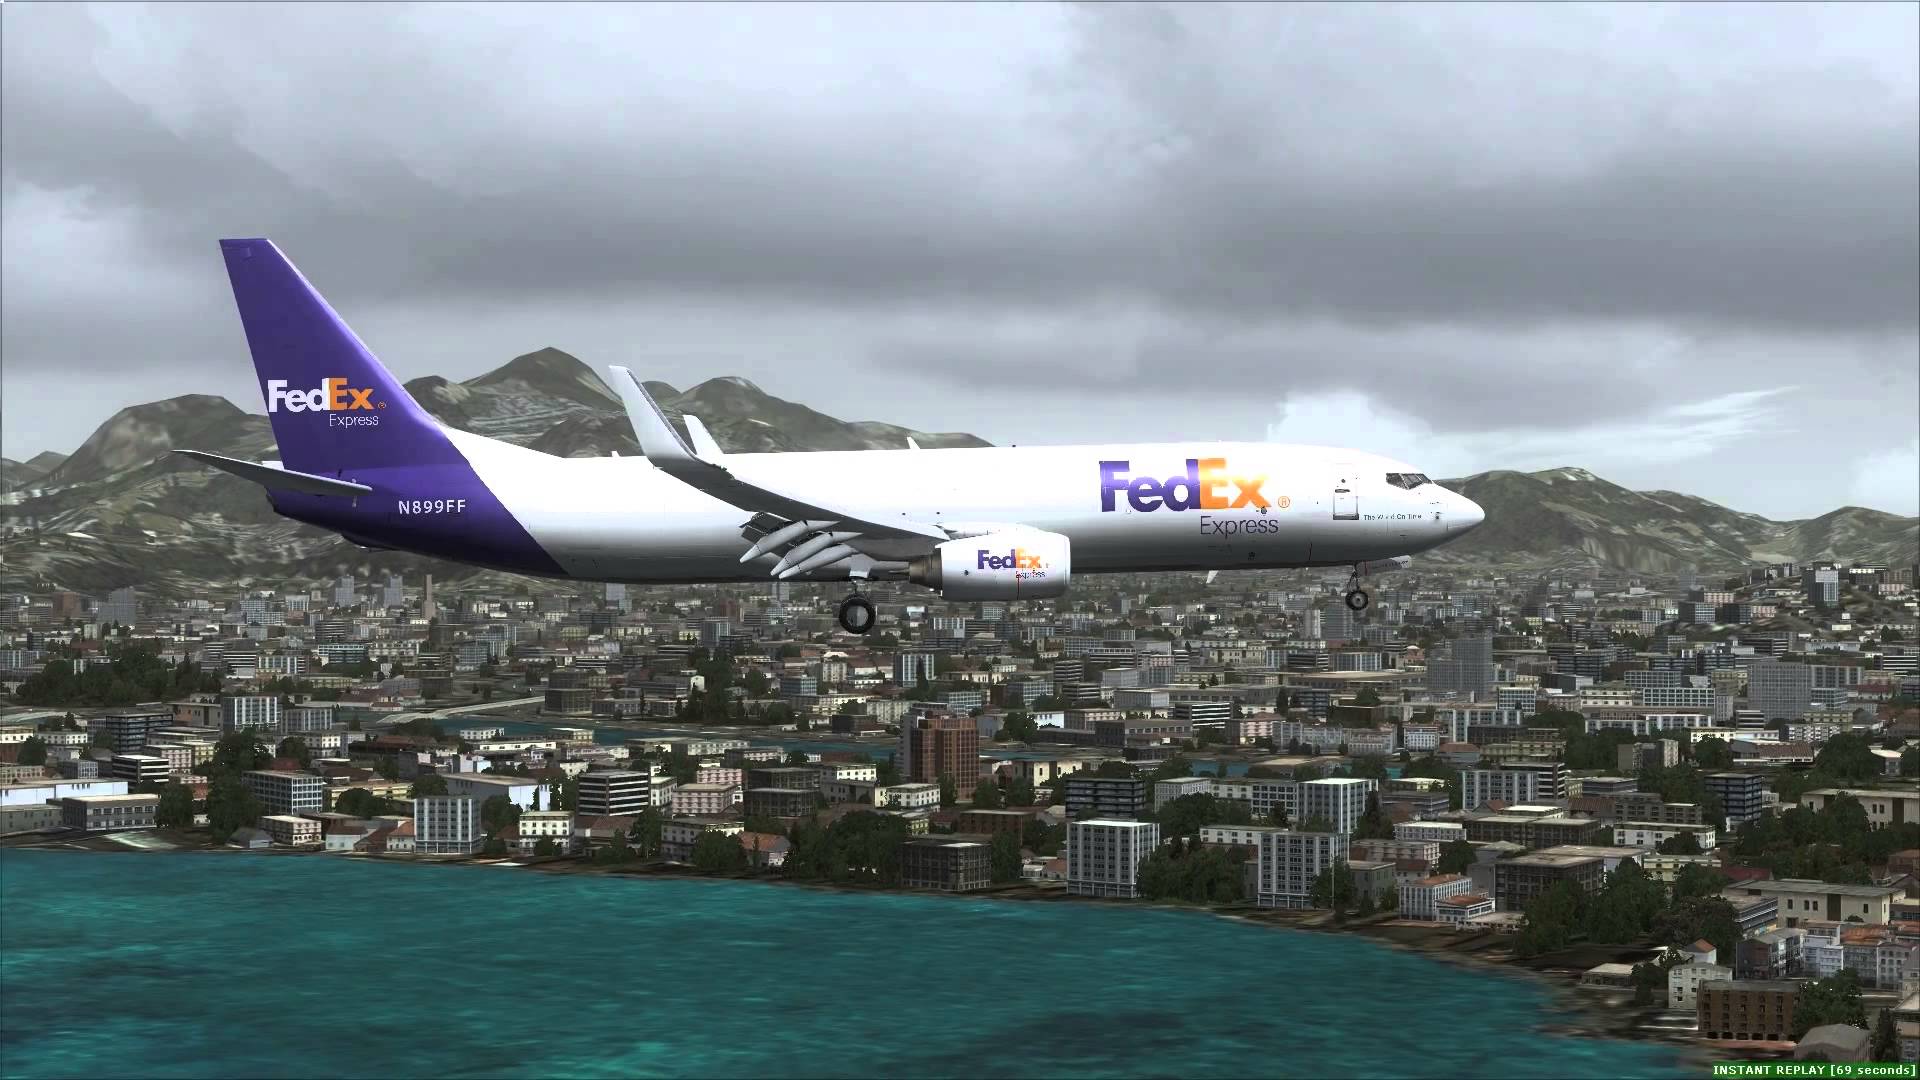 FEDEX_landing_Brazil.jpg